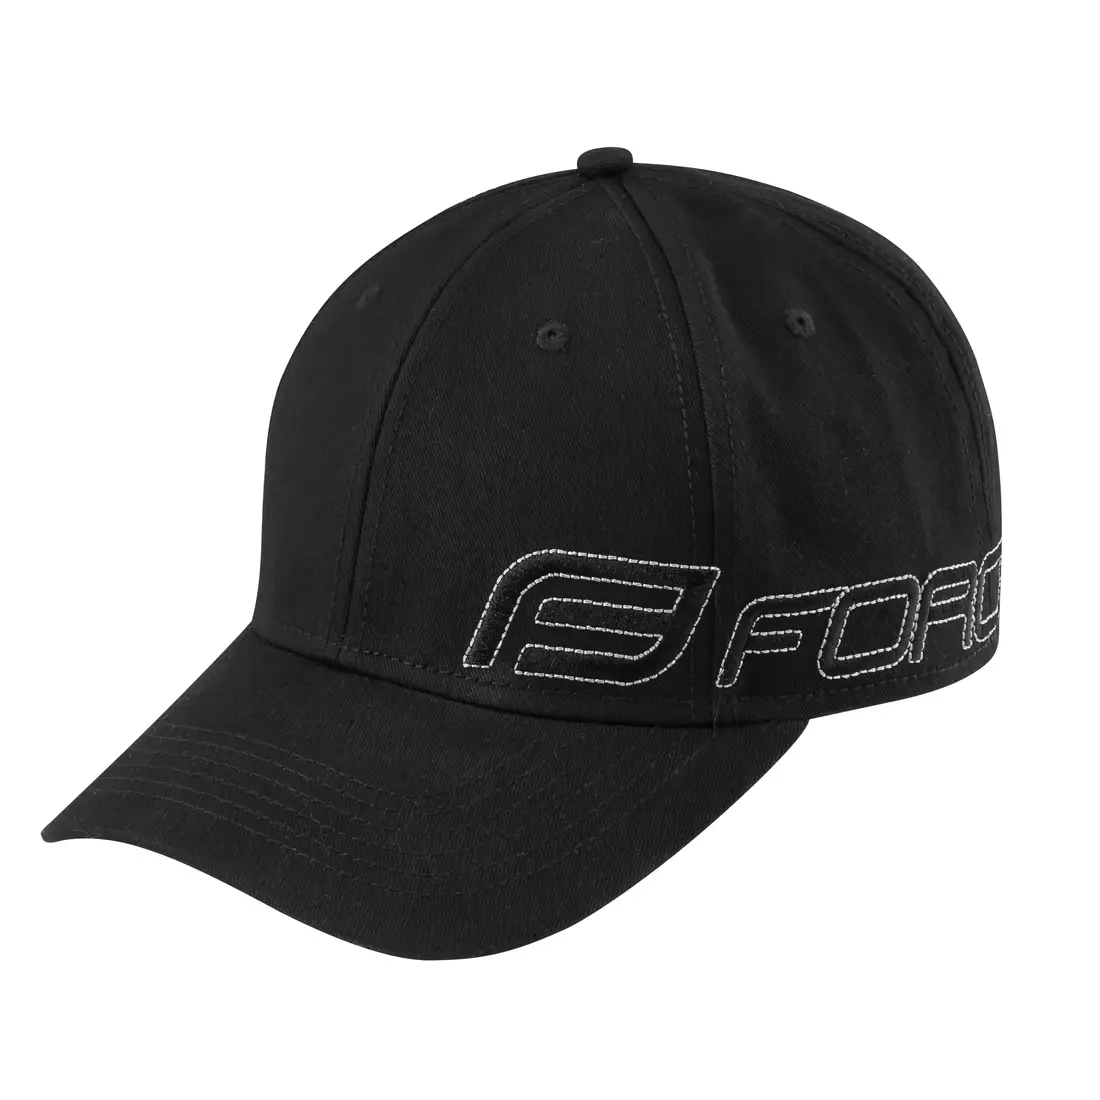 FORCE șapcă de baseball beforce negru 9030805